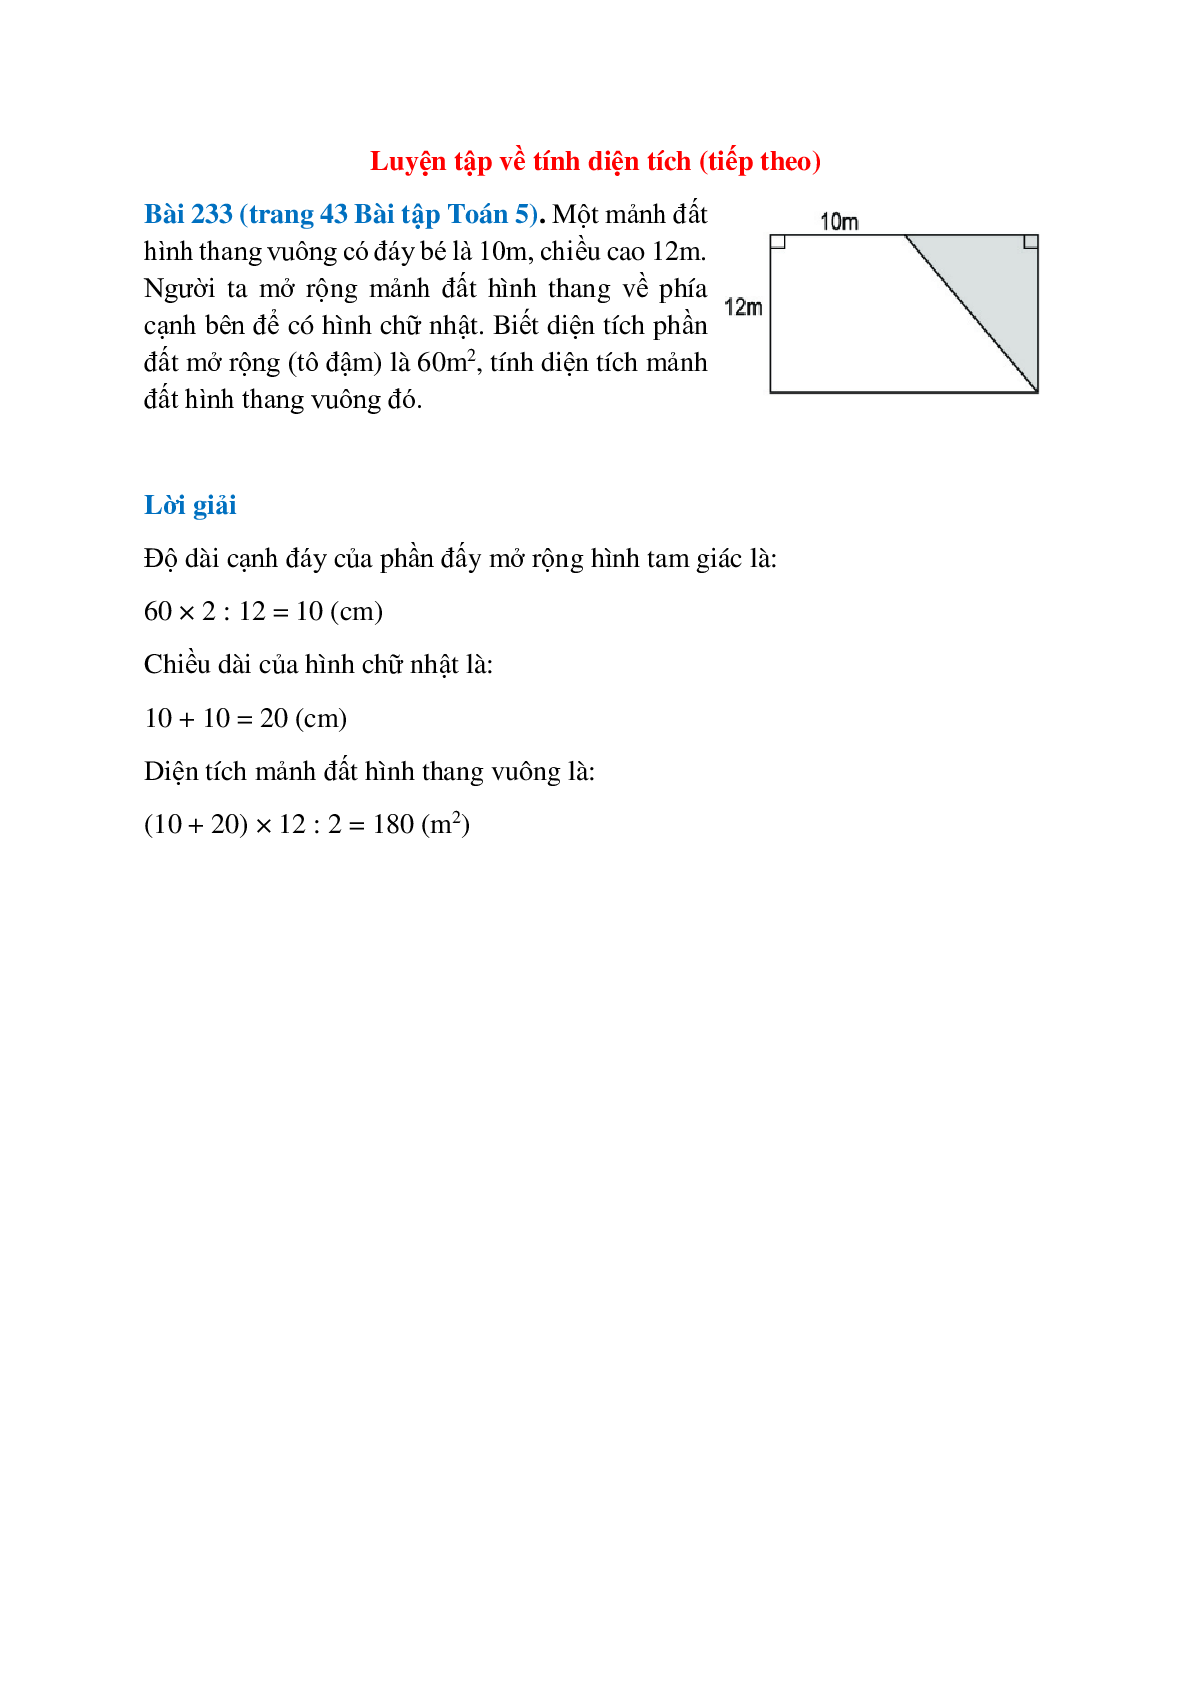 Cách vẽ và tính toán đường cao hình thang vuông đơn giản